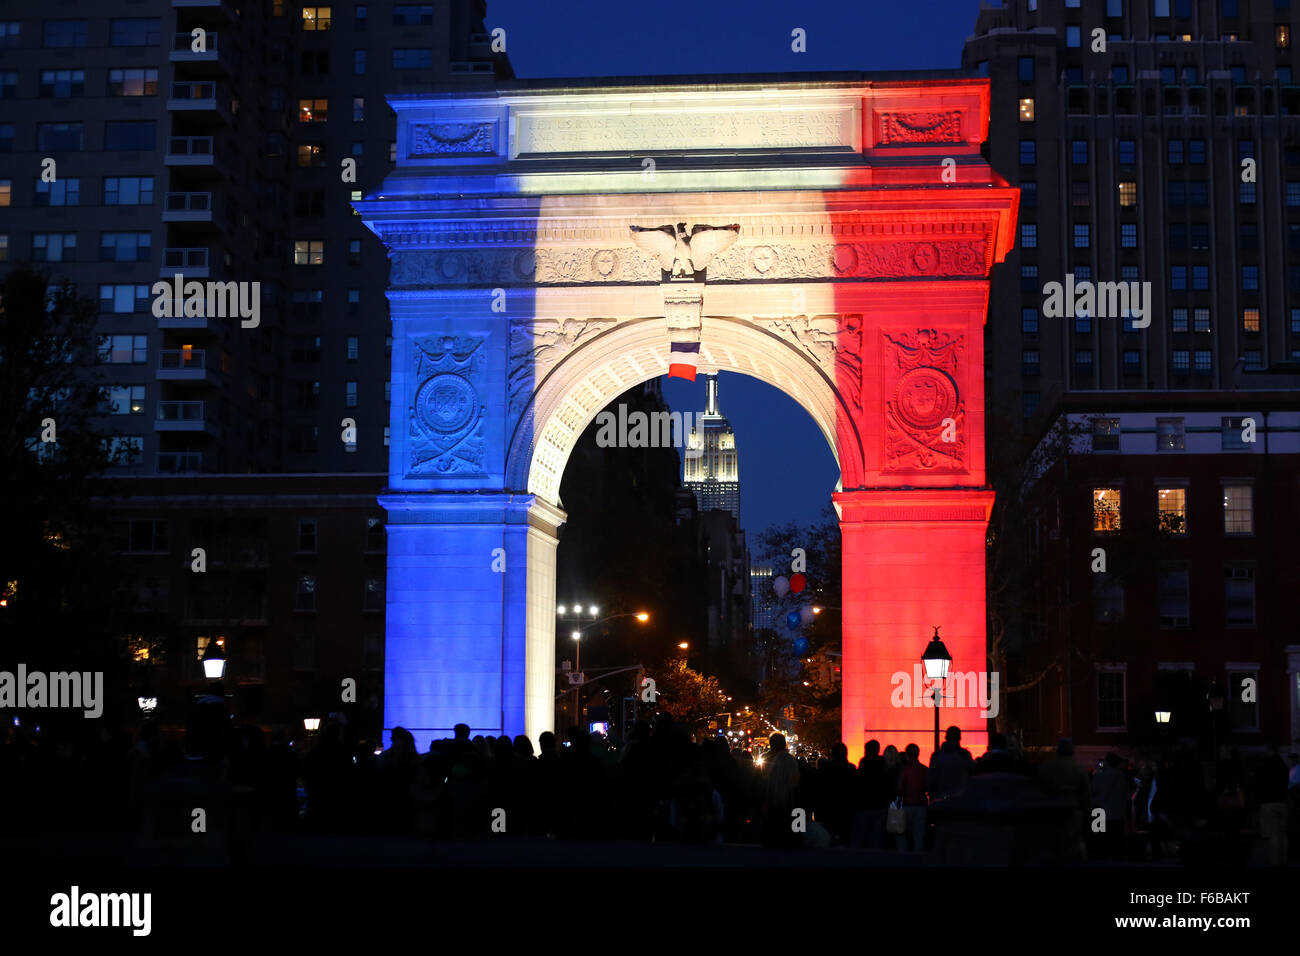 L'Arco di Washington a Washington Square Park illuminato nella solidarietà w il francese dopo i recenti attacchi terroristici a Parigi. New York, NY. Novembre 15, 2015 Foto Stock